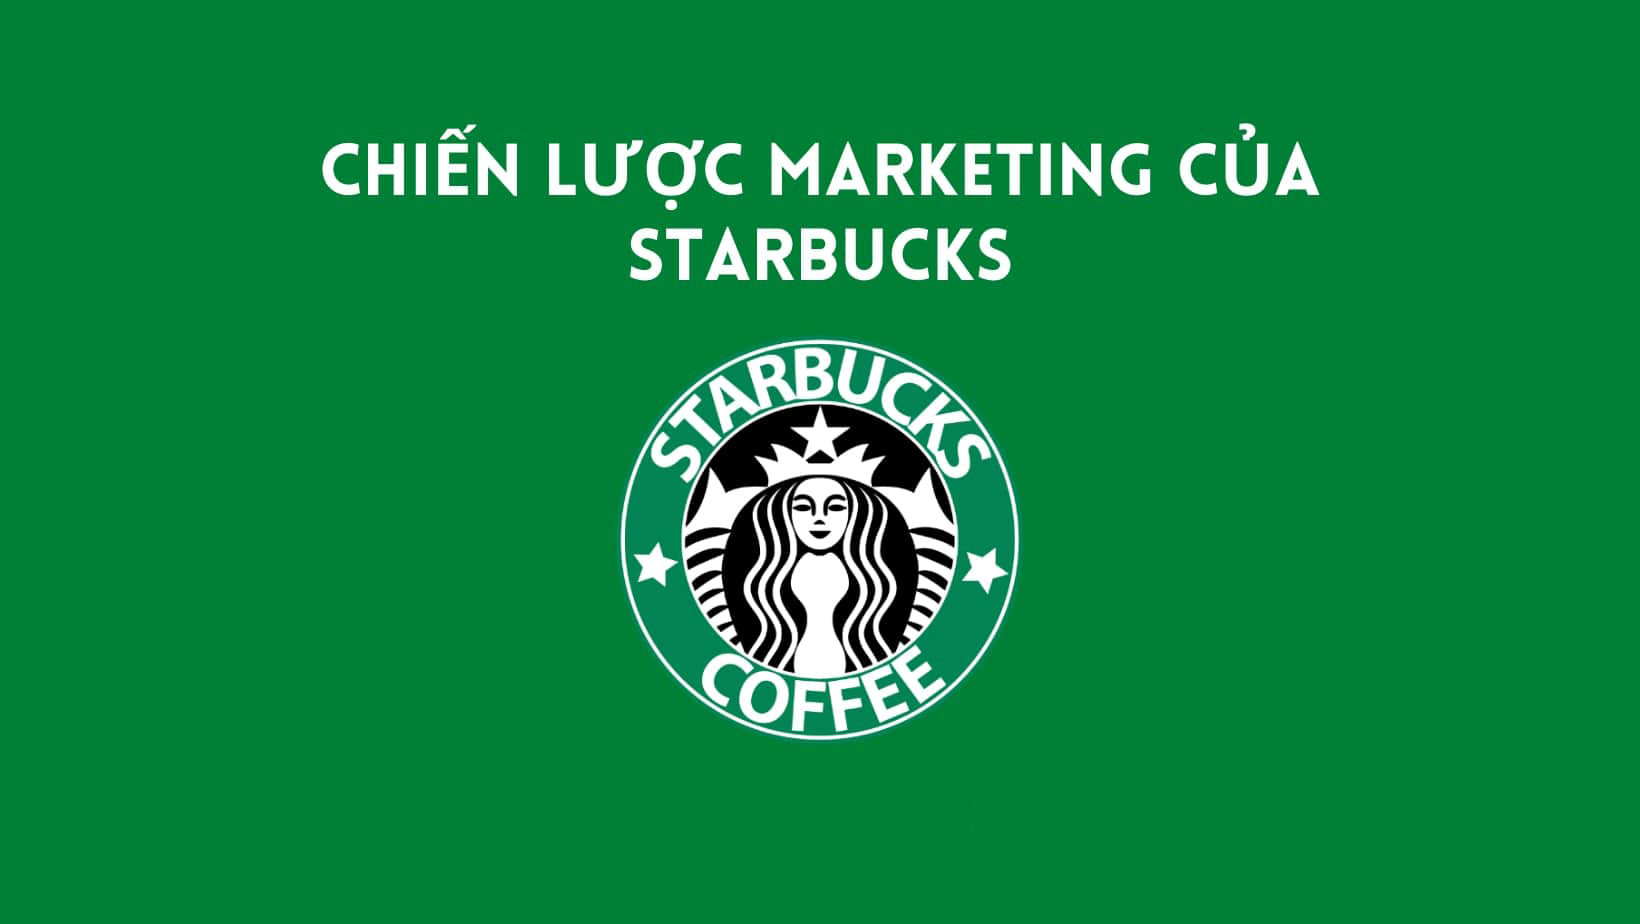 Chiến Lược Marketing Của Starbucks Thành Công Từ Đâu?